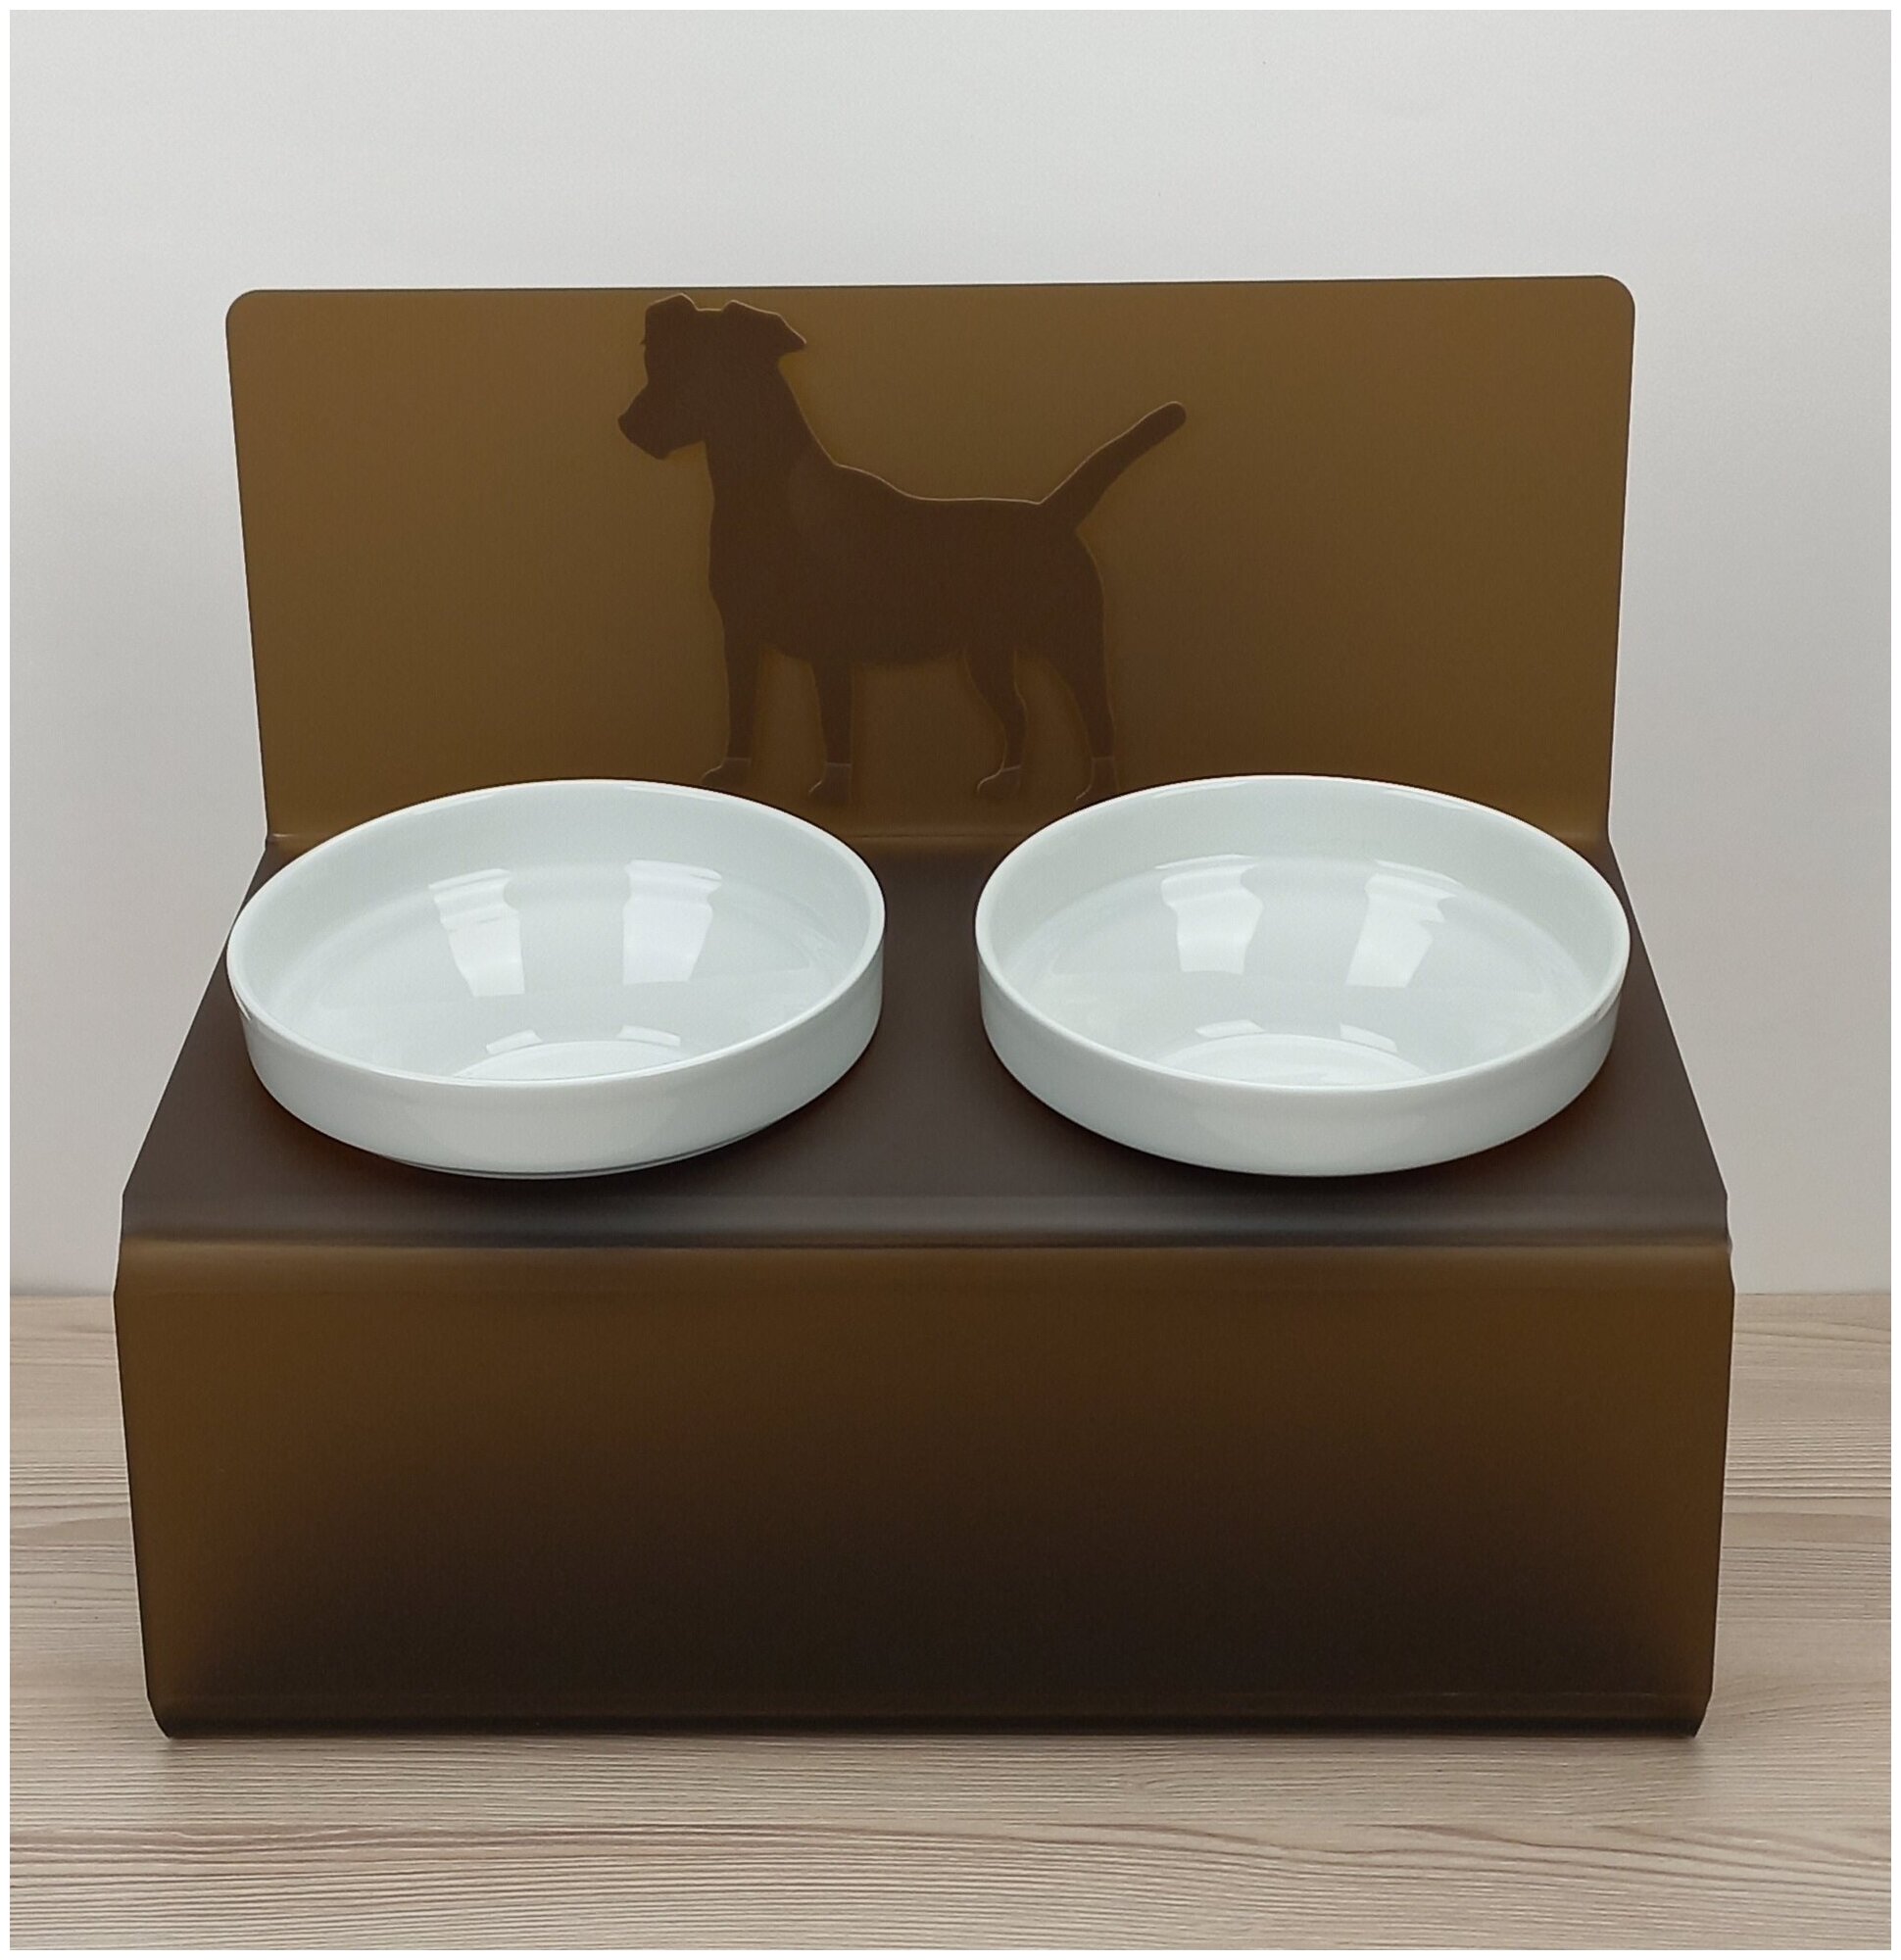 Миска для собак на подставке с наклоном Artmiska "Джек-рассел" S двойная 2x800 мл, коричнево-кофейная